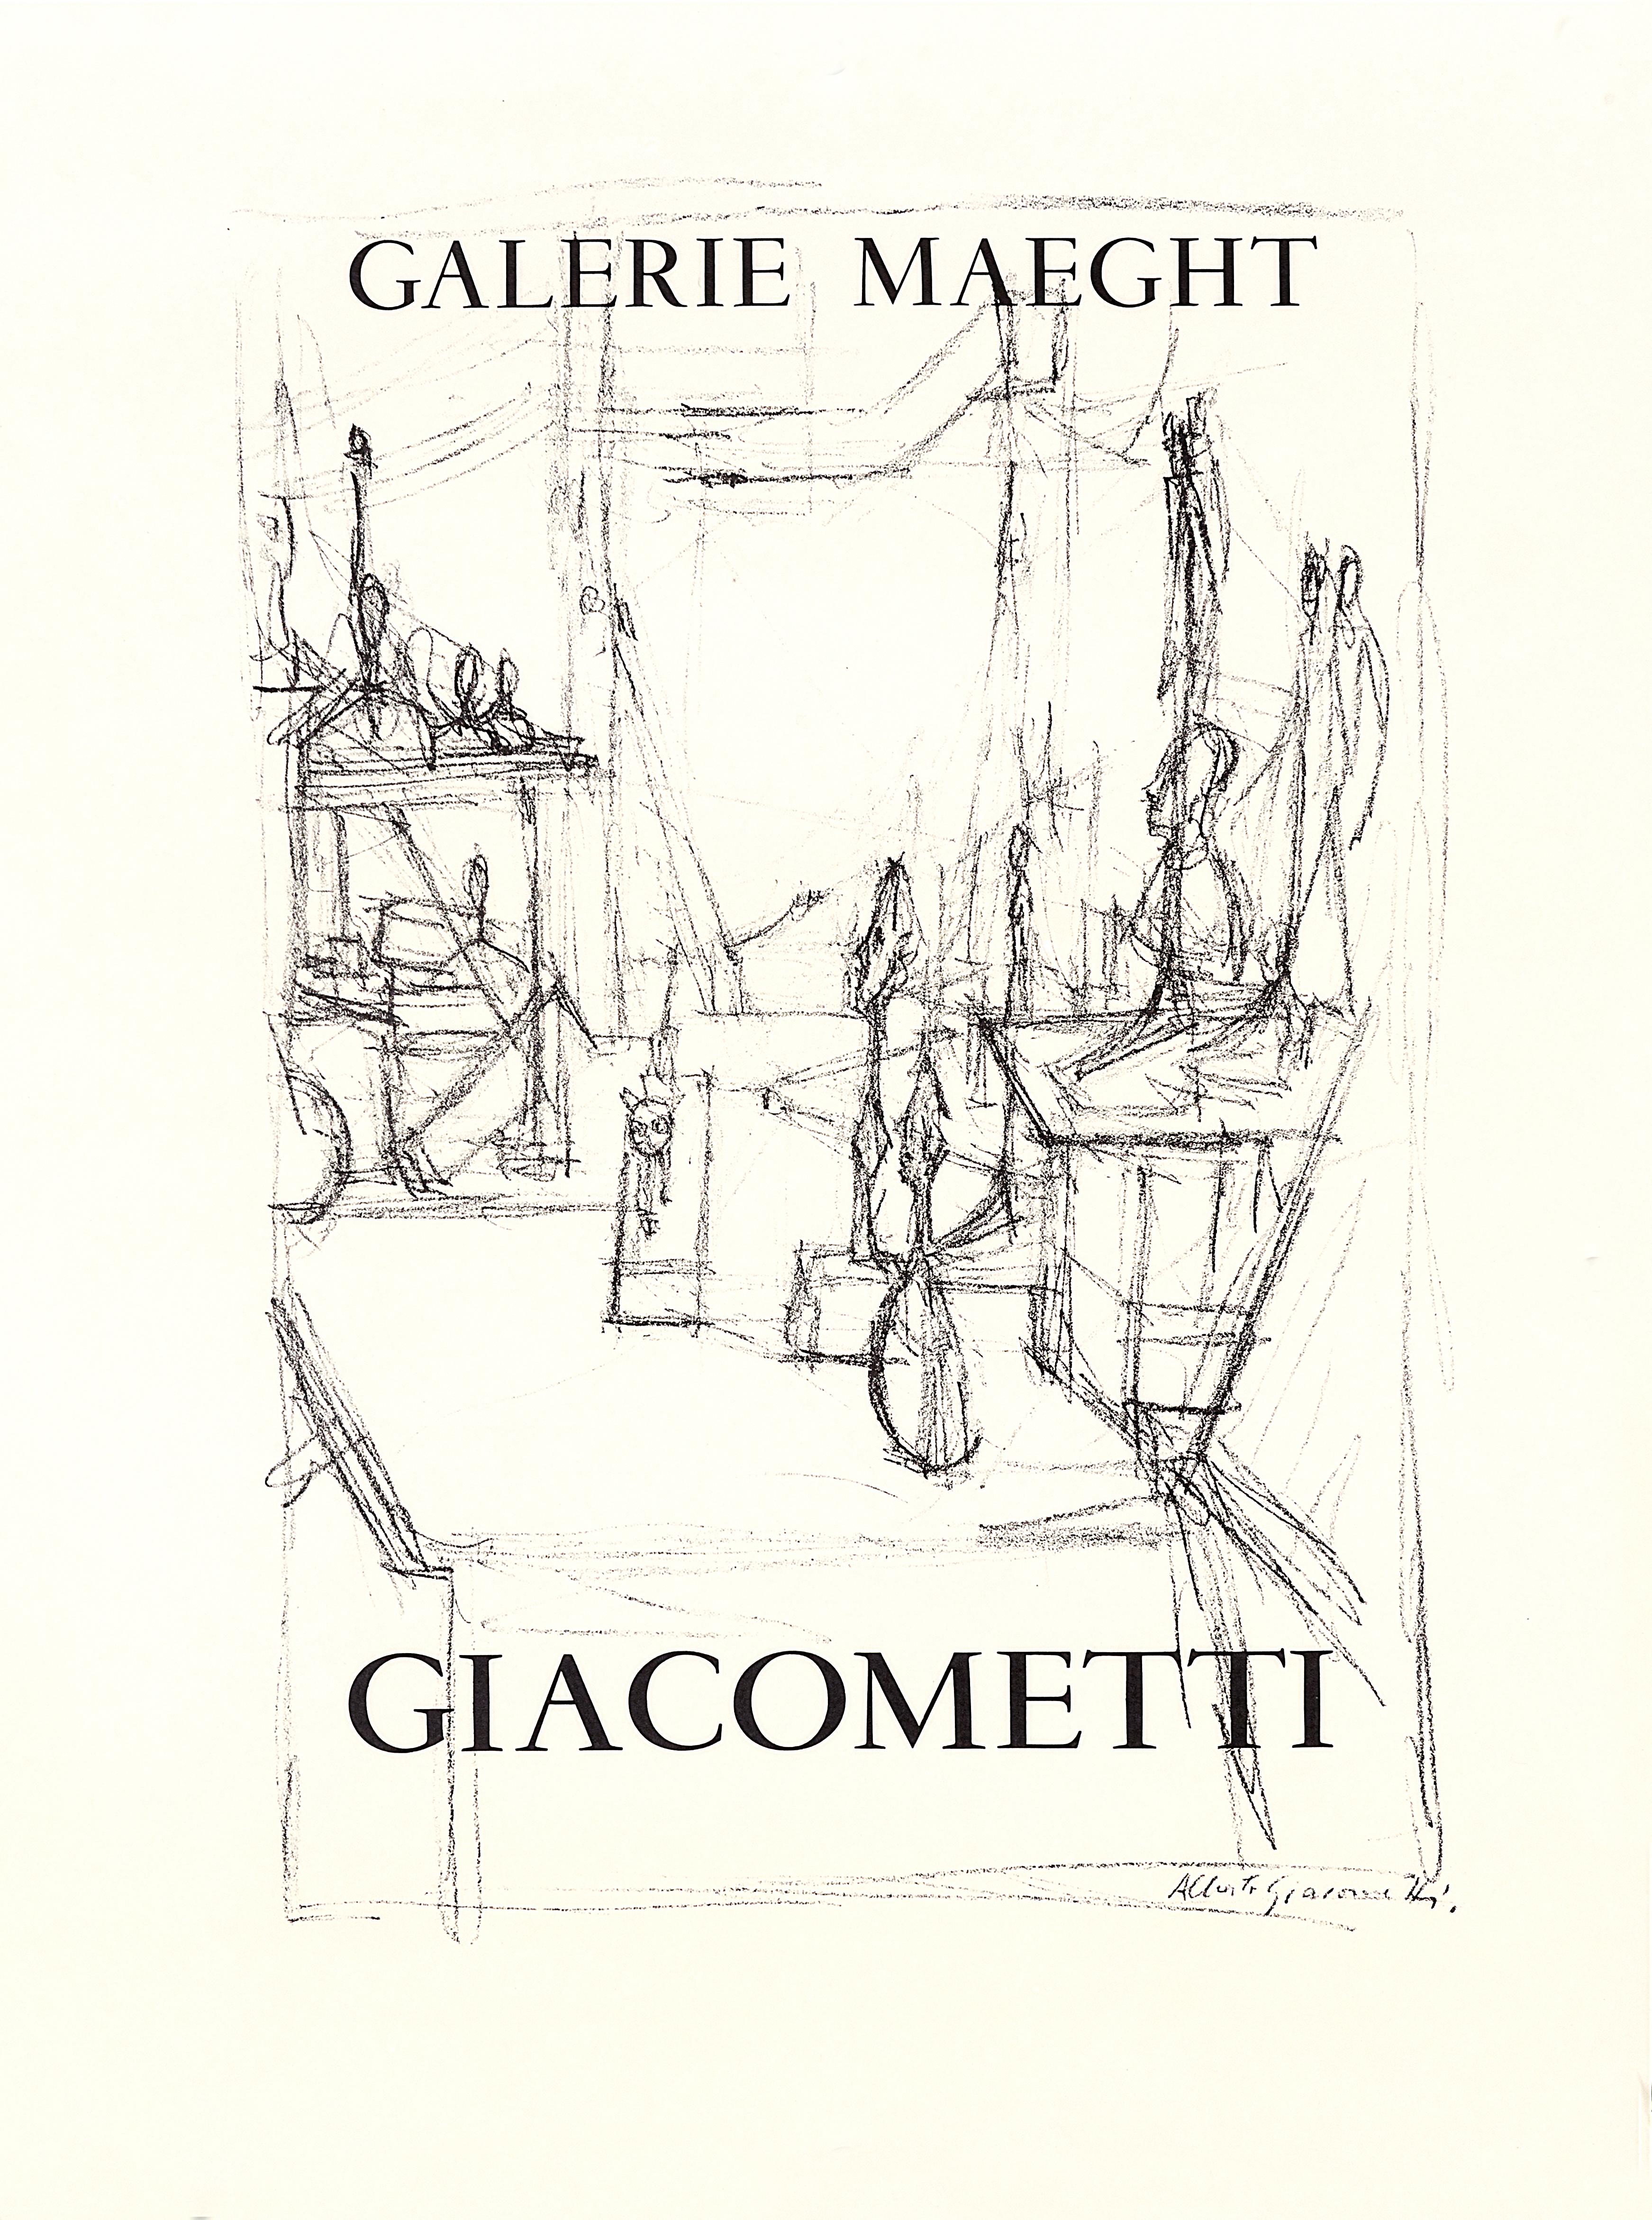 Alberto Giacometti Interior Print - "Giacometti - Galerie Maeght (Drawing)" Original Vintage Art Exhibition Poster